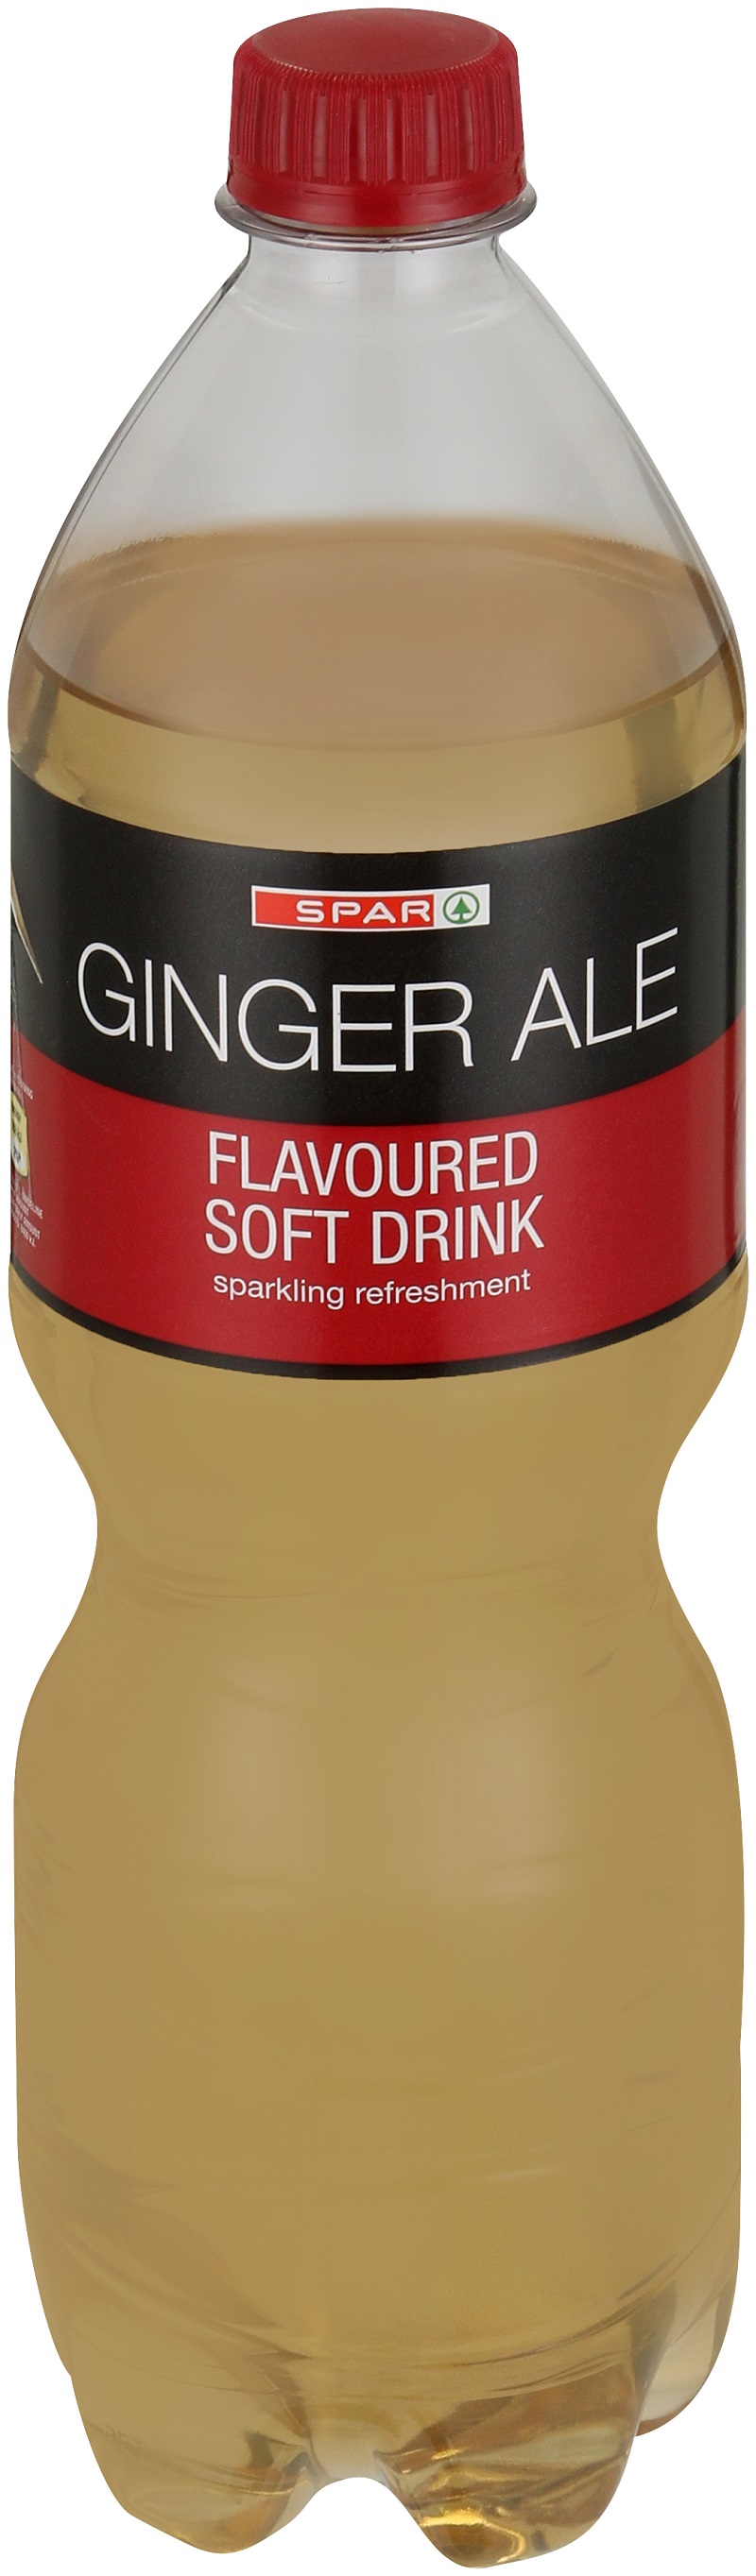 carbonated soft drink ginger ale